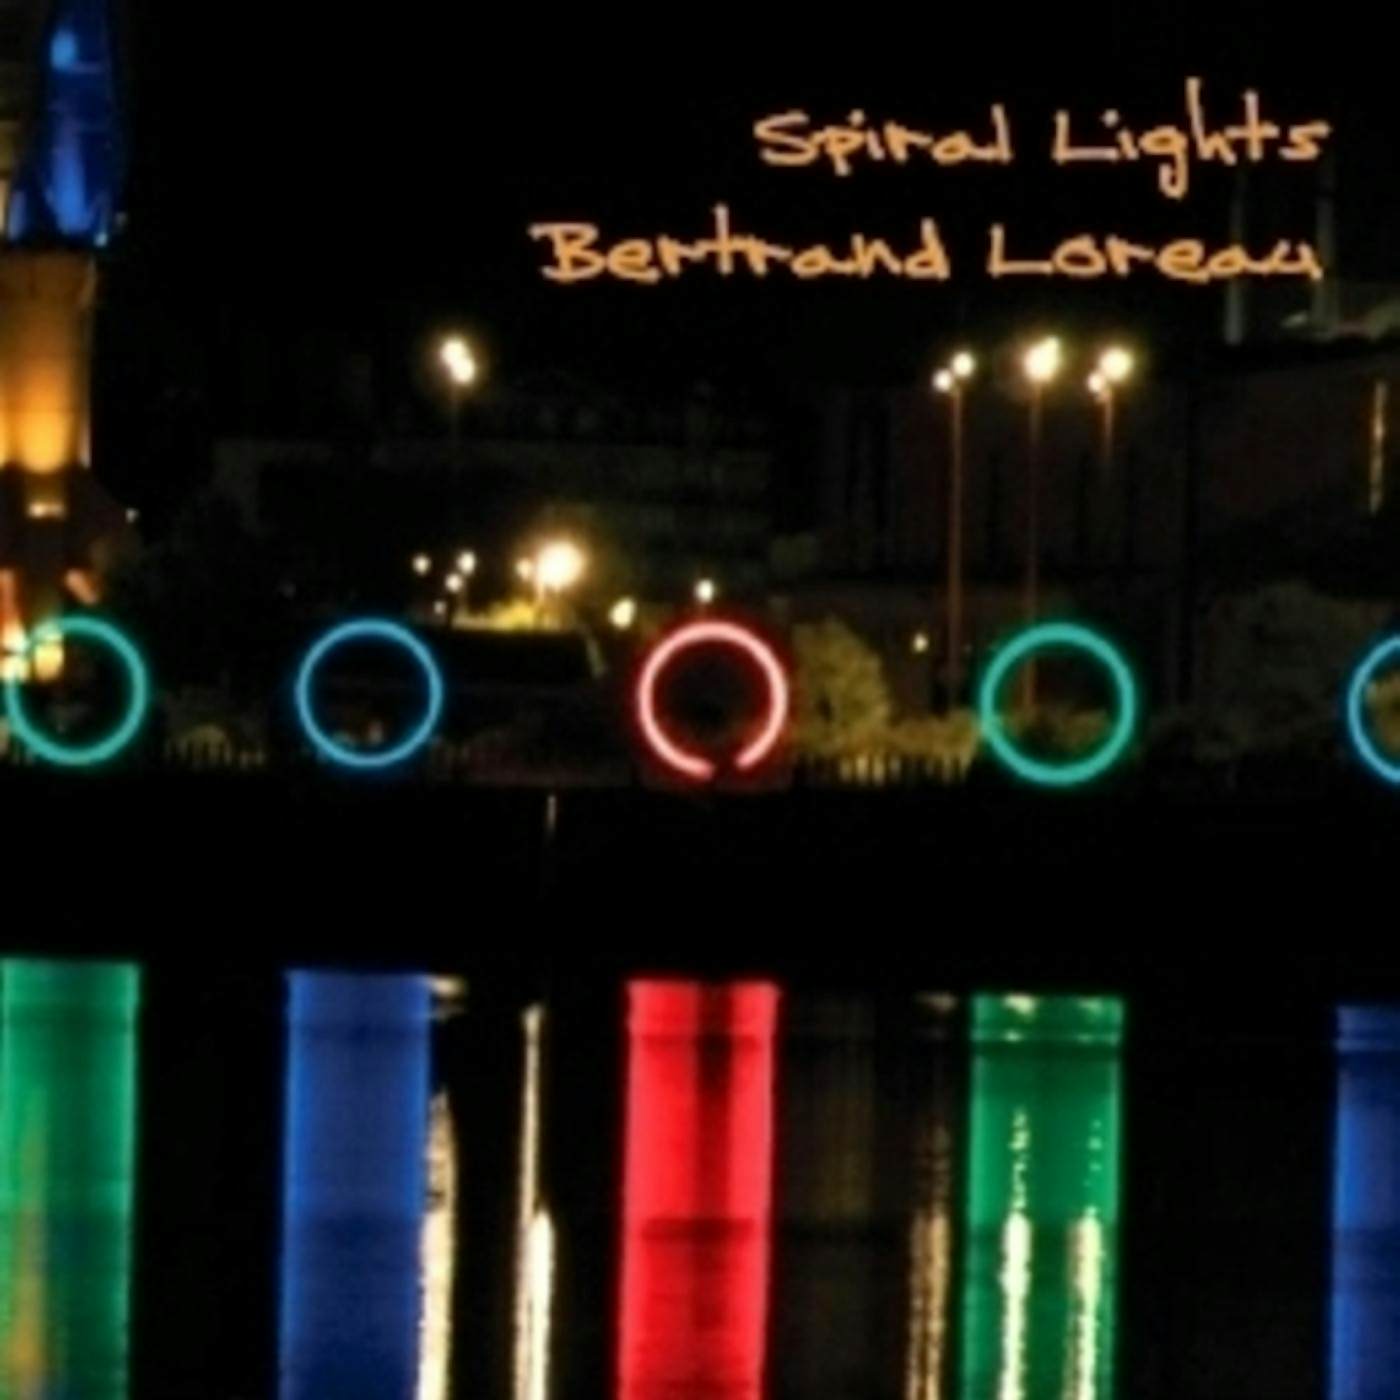 Bertrand Loreau SPIRAL LIGHTS CD